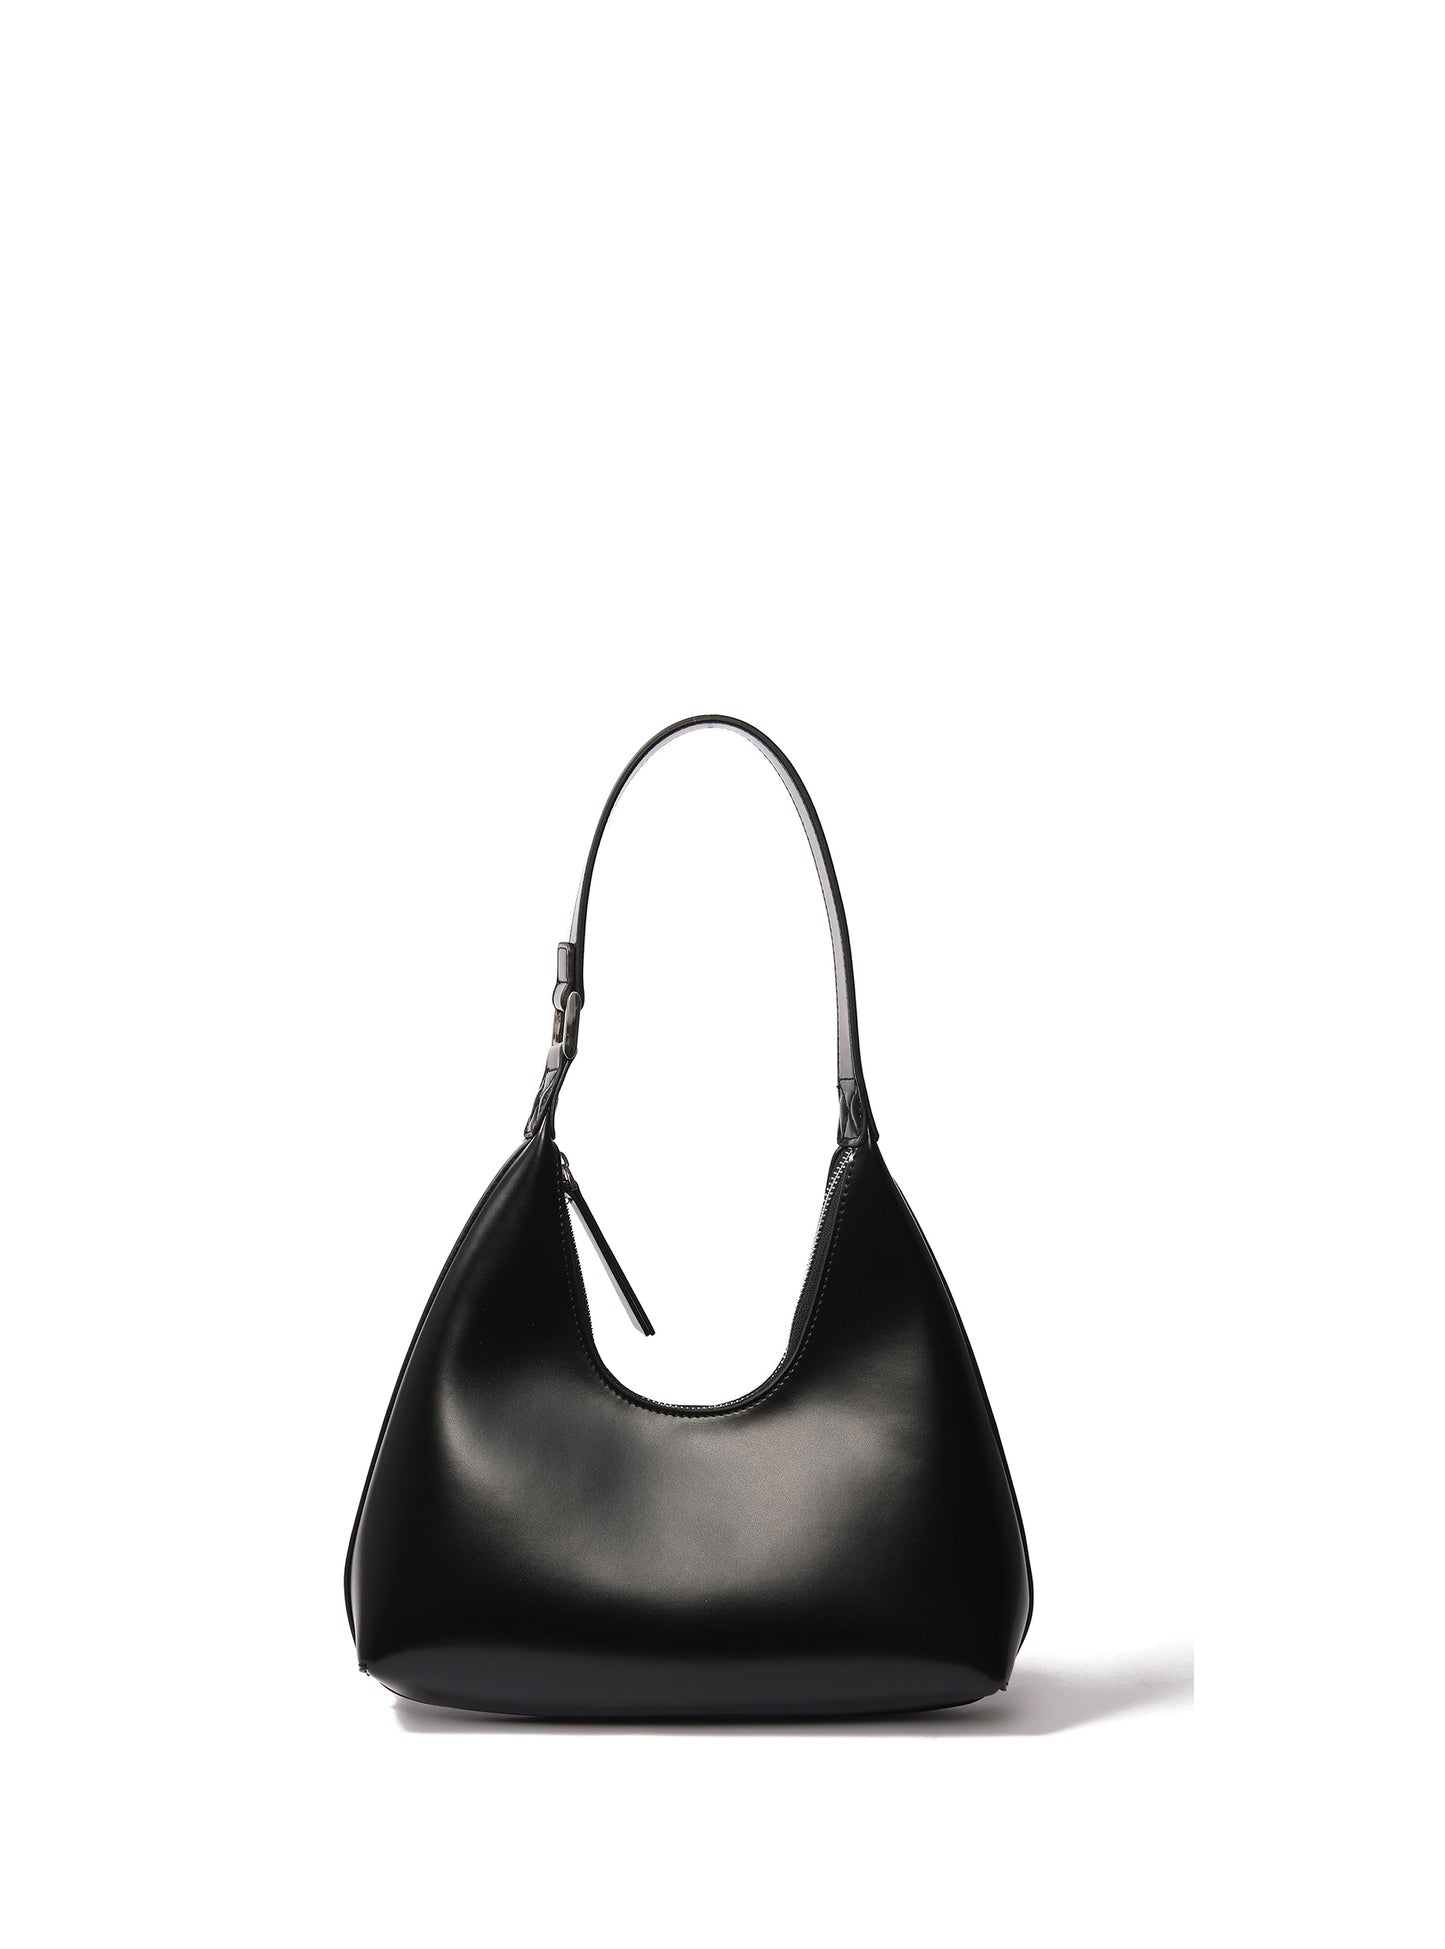 alexia bag, alexia handbag